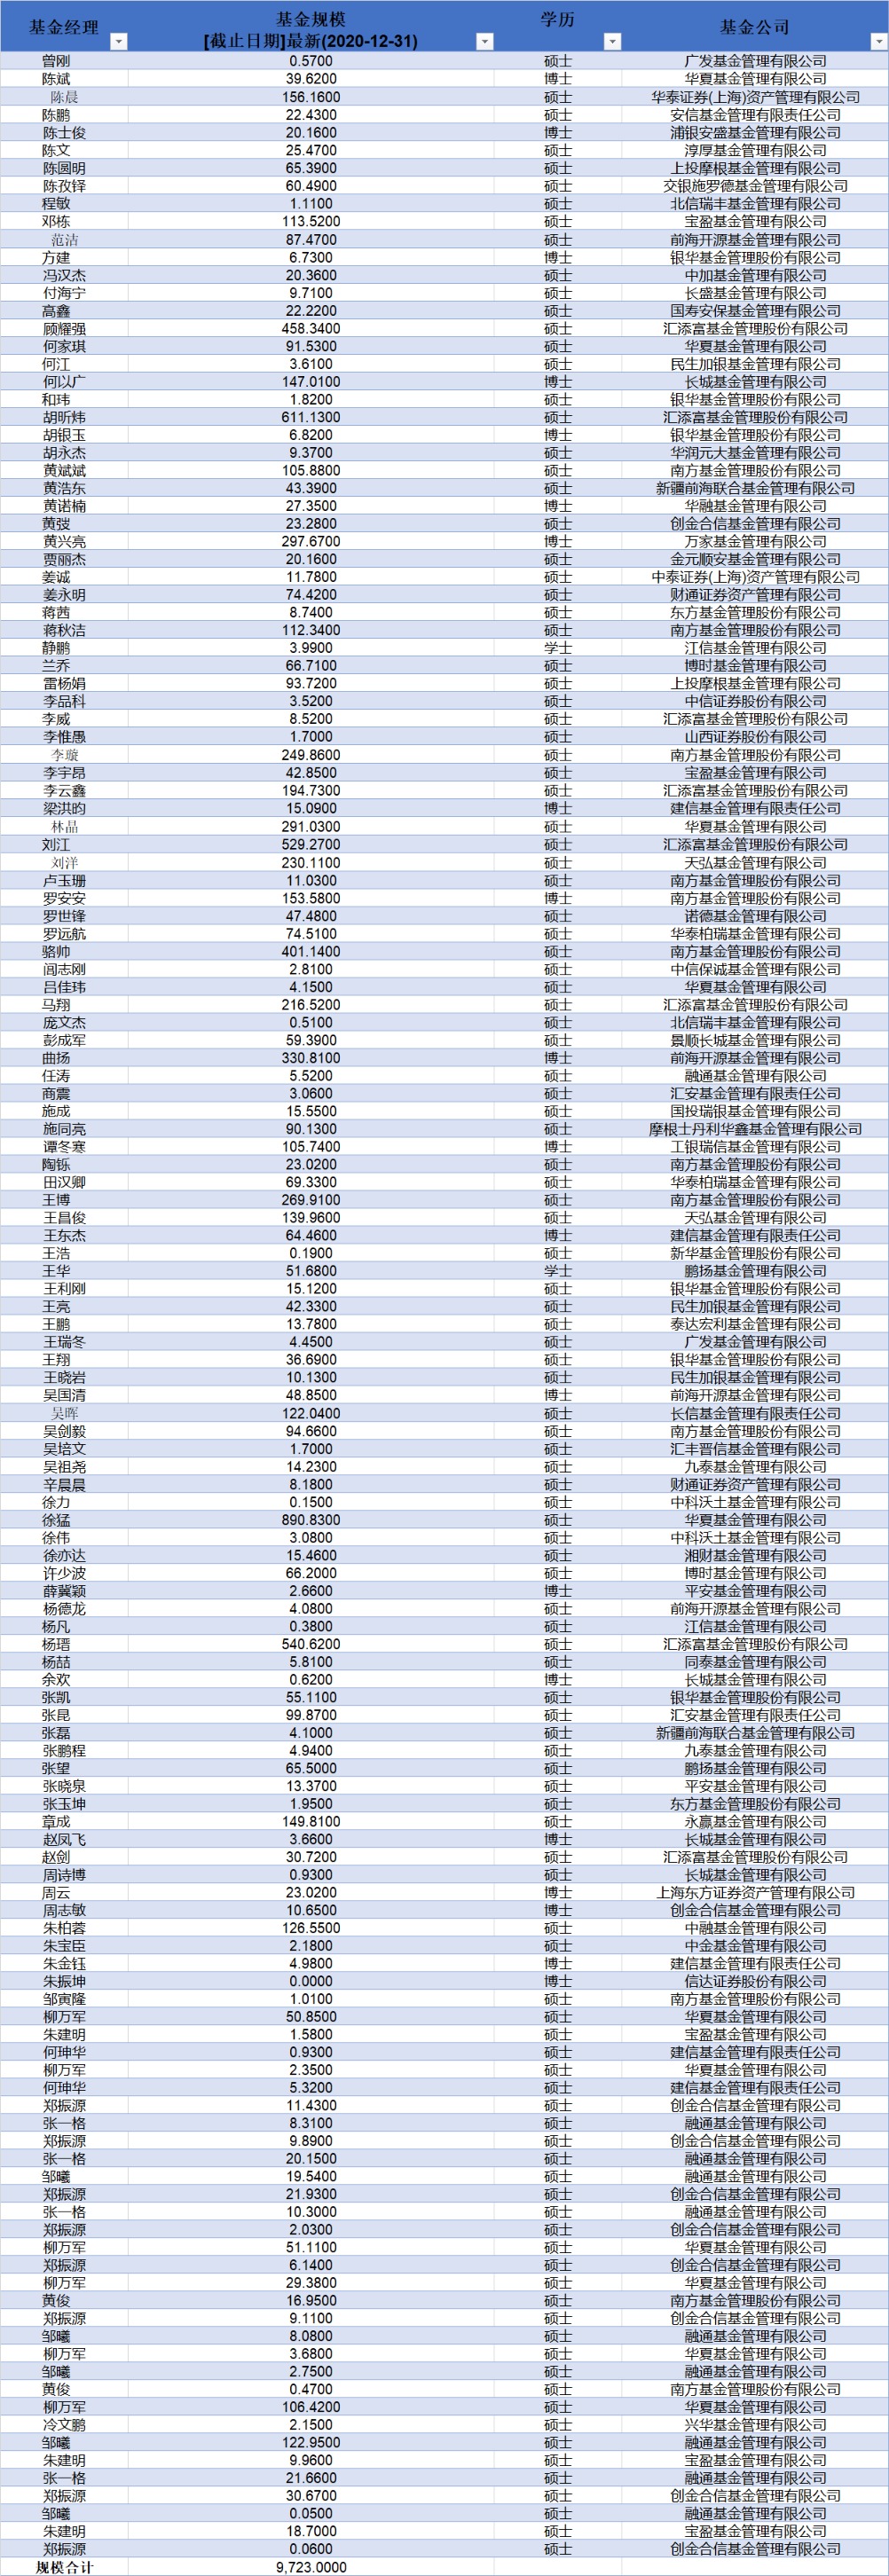 清华大学基金经理人数及持有基金规模统计 